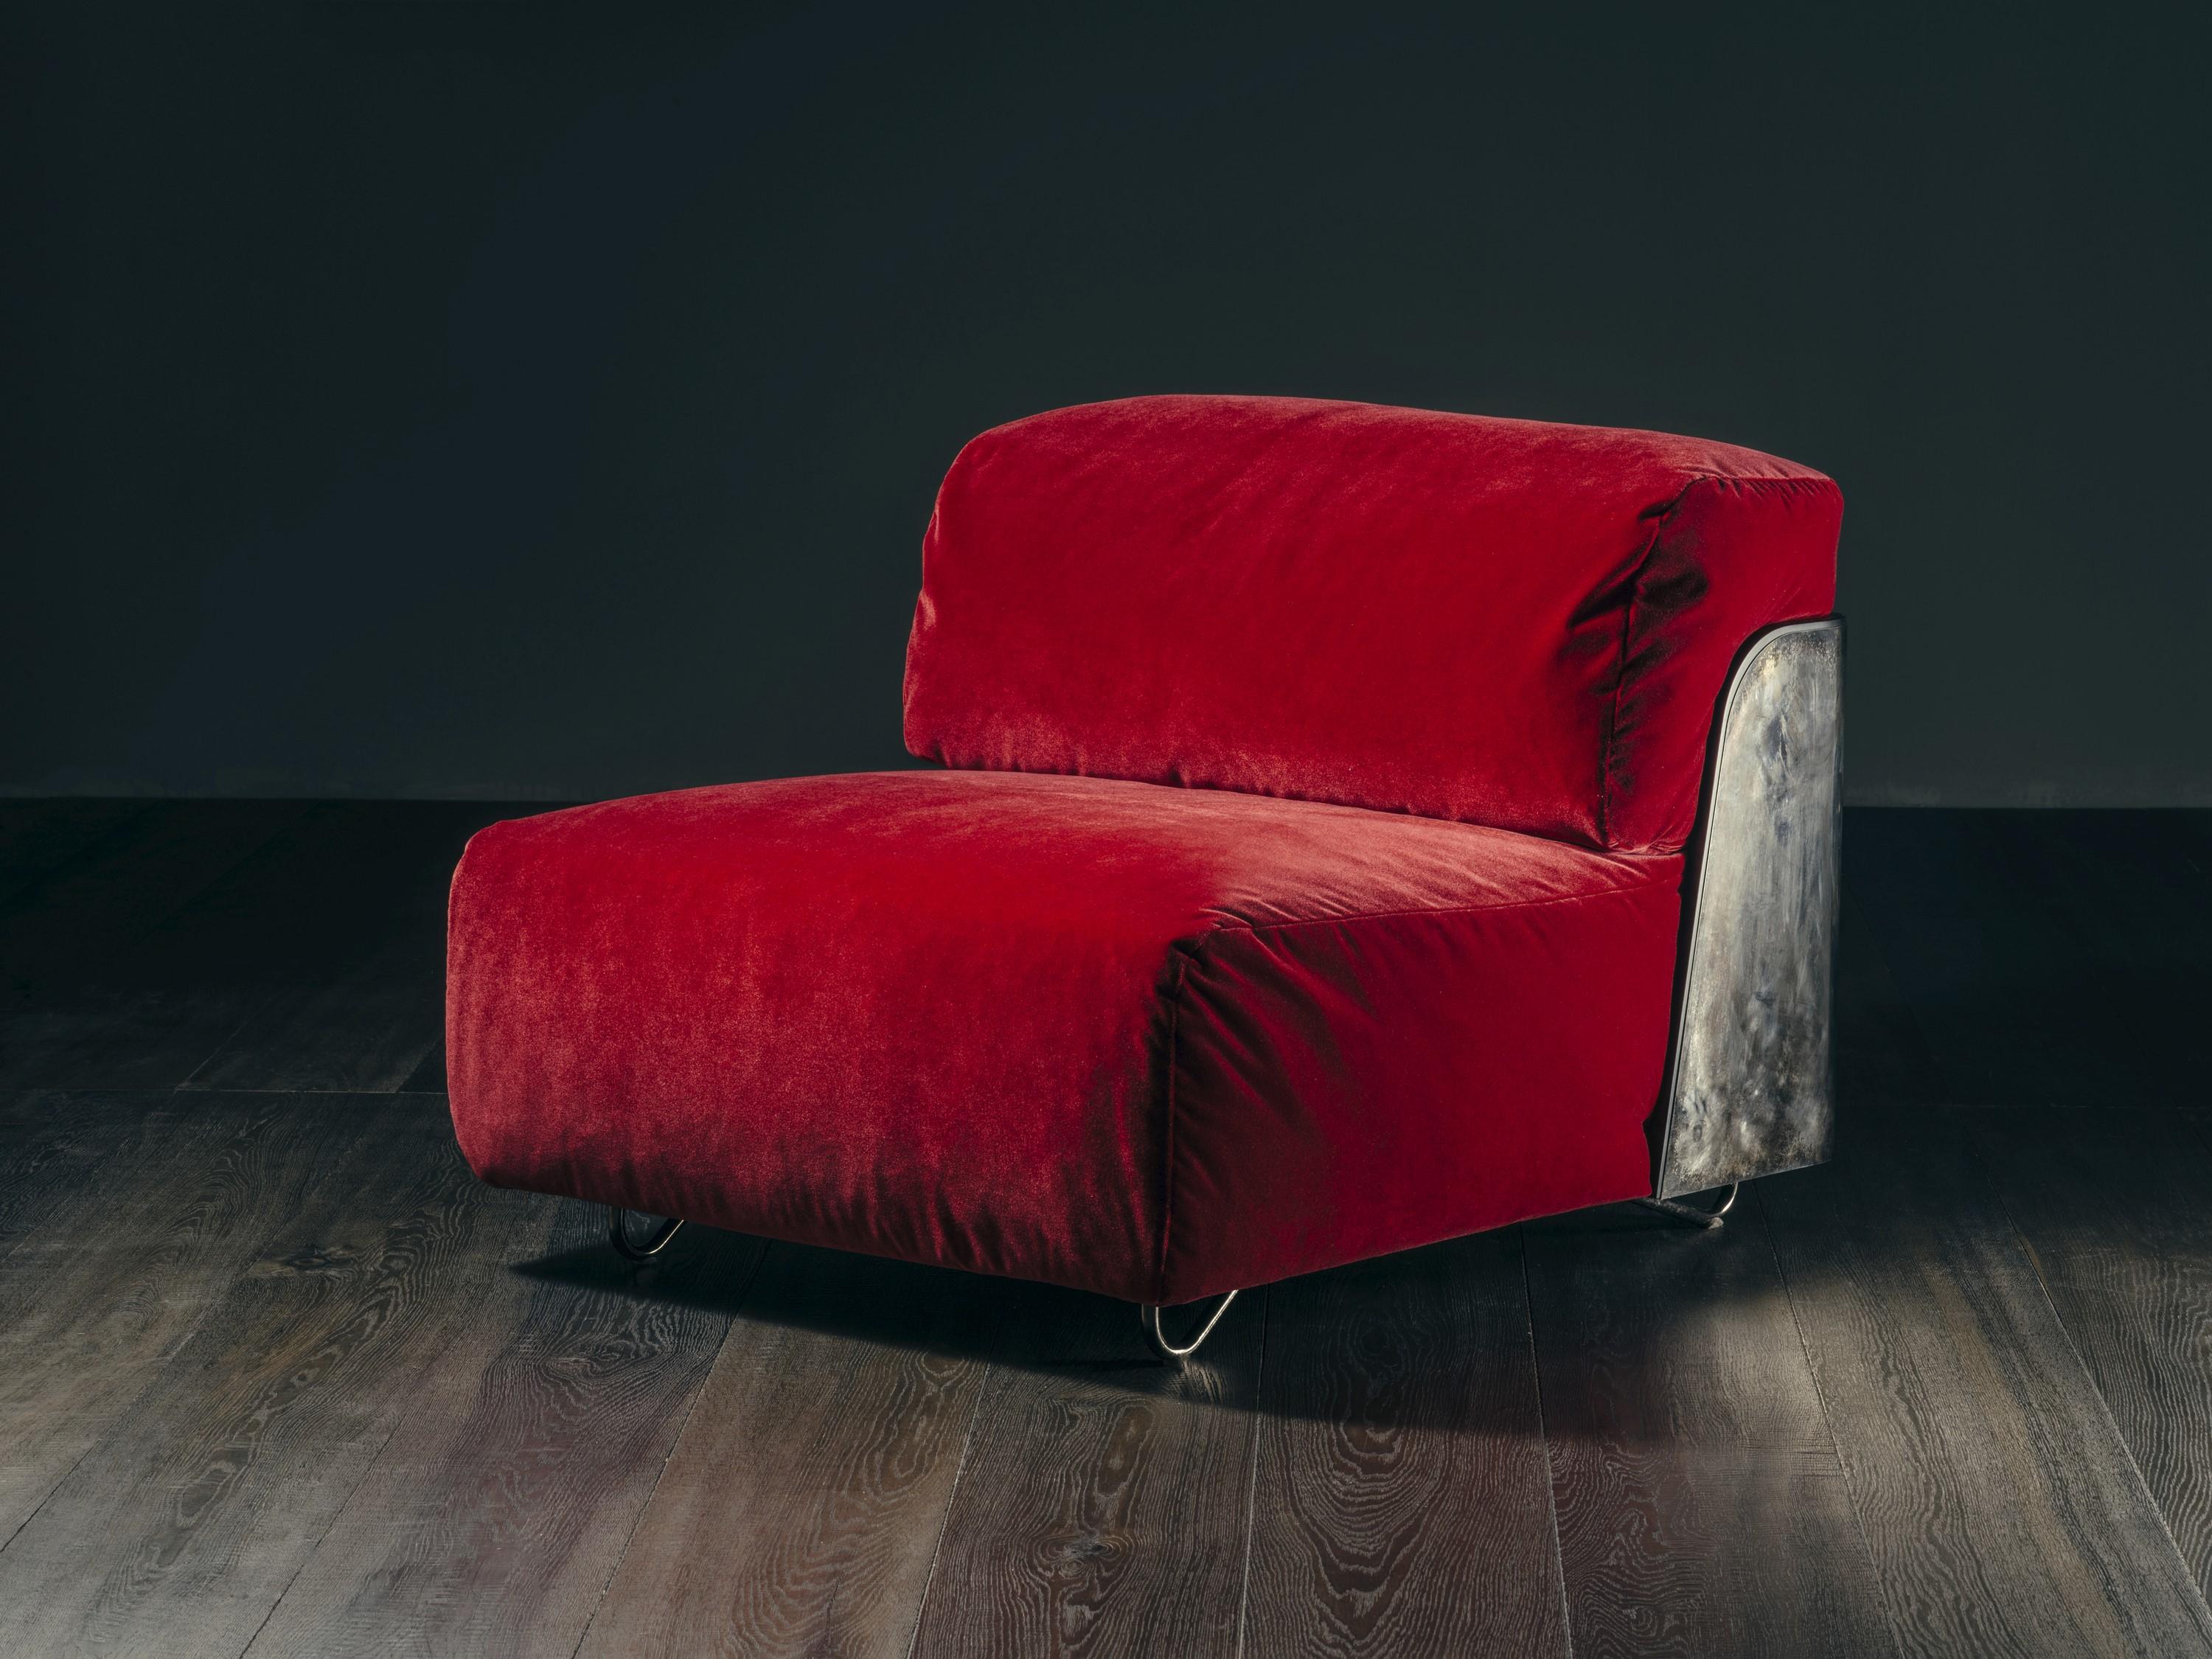 Der Sessel SAINT-GERMAIN gehört zur Capsule-Kollektion FLEURS DU MAL. Der Sessel SAINT-GERMAIN und seine optional erhältliche Fußstütze bestehen aus einem sichtbaren Gestell aus mattschwarz lackiertem Holz, das mit einem Metallüberzug versehen ist.